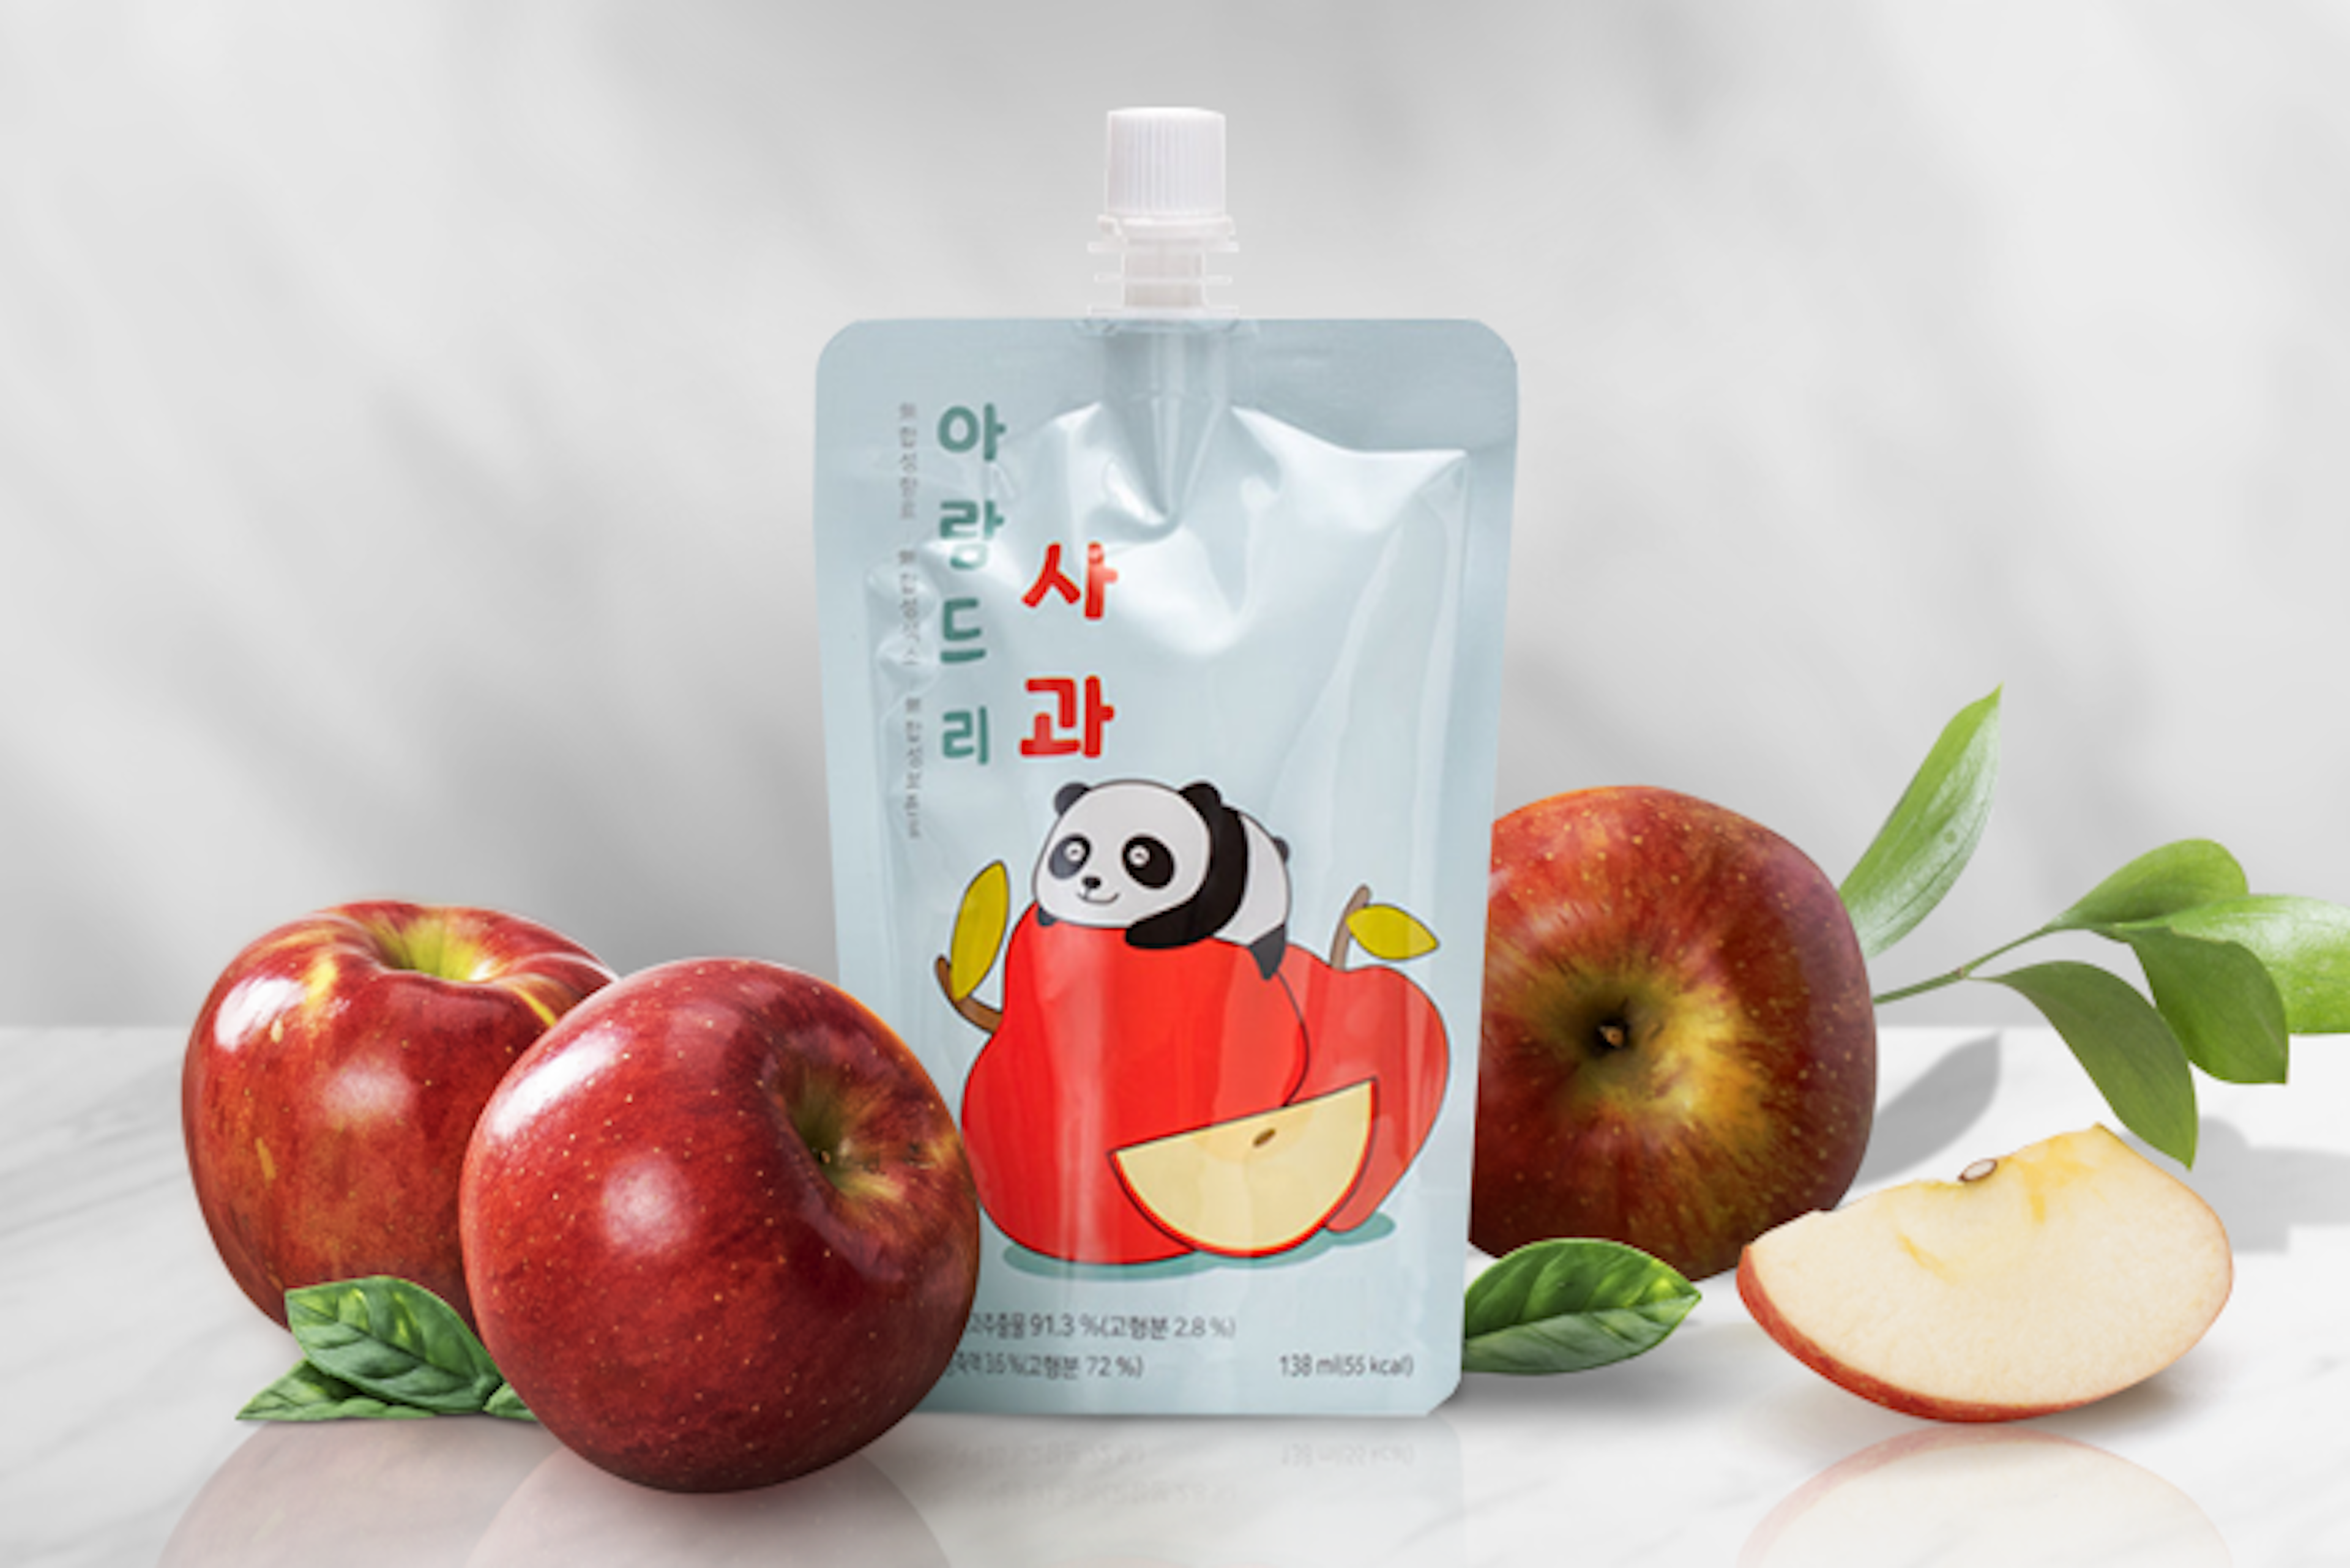 Aramfarm-Aramdri-Apfelsaft-138ml-Flasche-mit-sichtbarem-Etikett-zeigt-die-Marke-und-Produktinformationen,-präsentiert-auf-einem-sauberen-weißen-Tisch